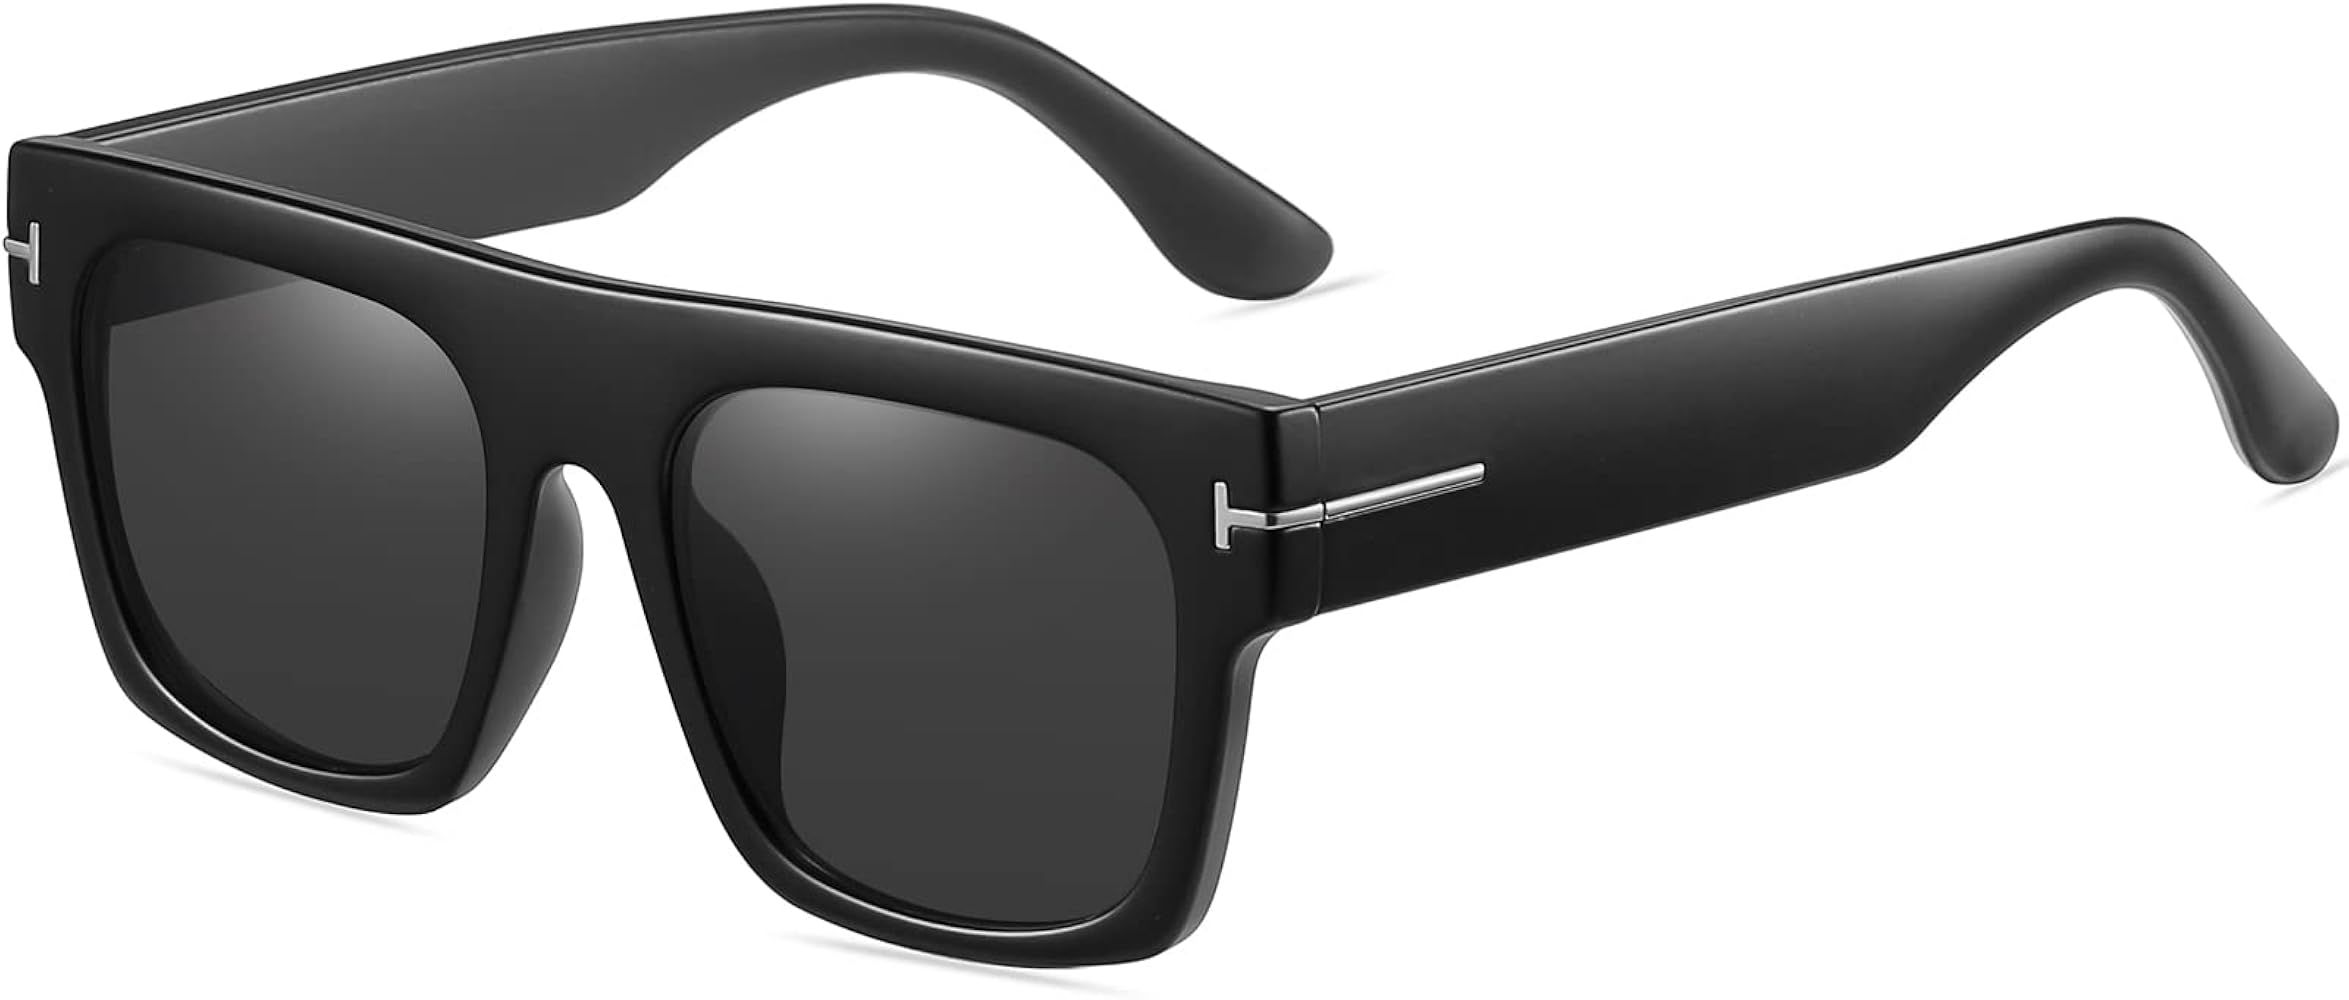 AIEYEZO Fashion Square Sunglasses for Women Men Sports Driving Sun Glasses Anti-Glare 100% UV Protec | Amazon (US)